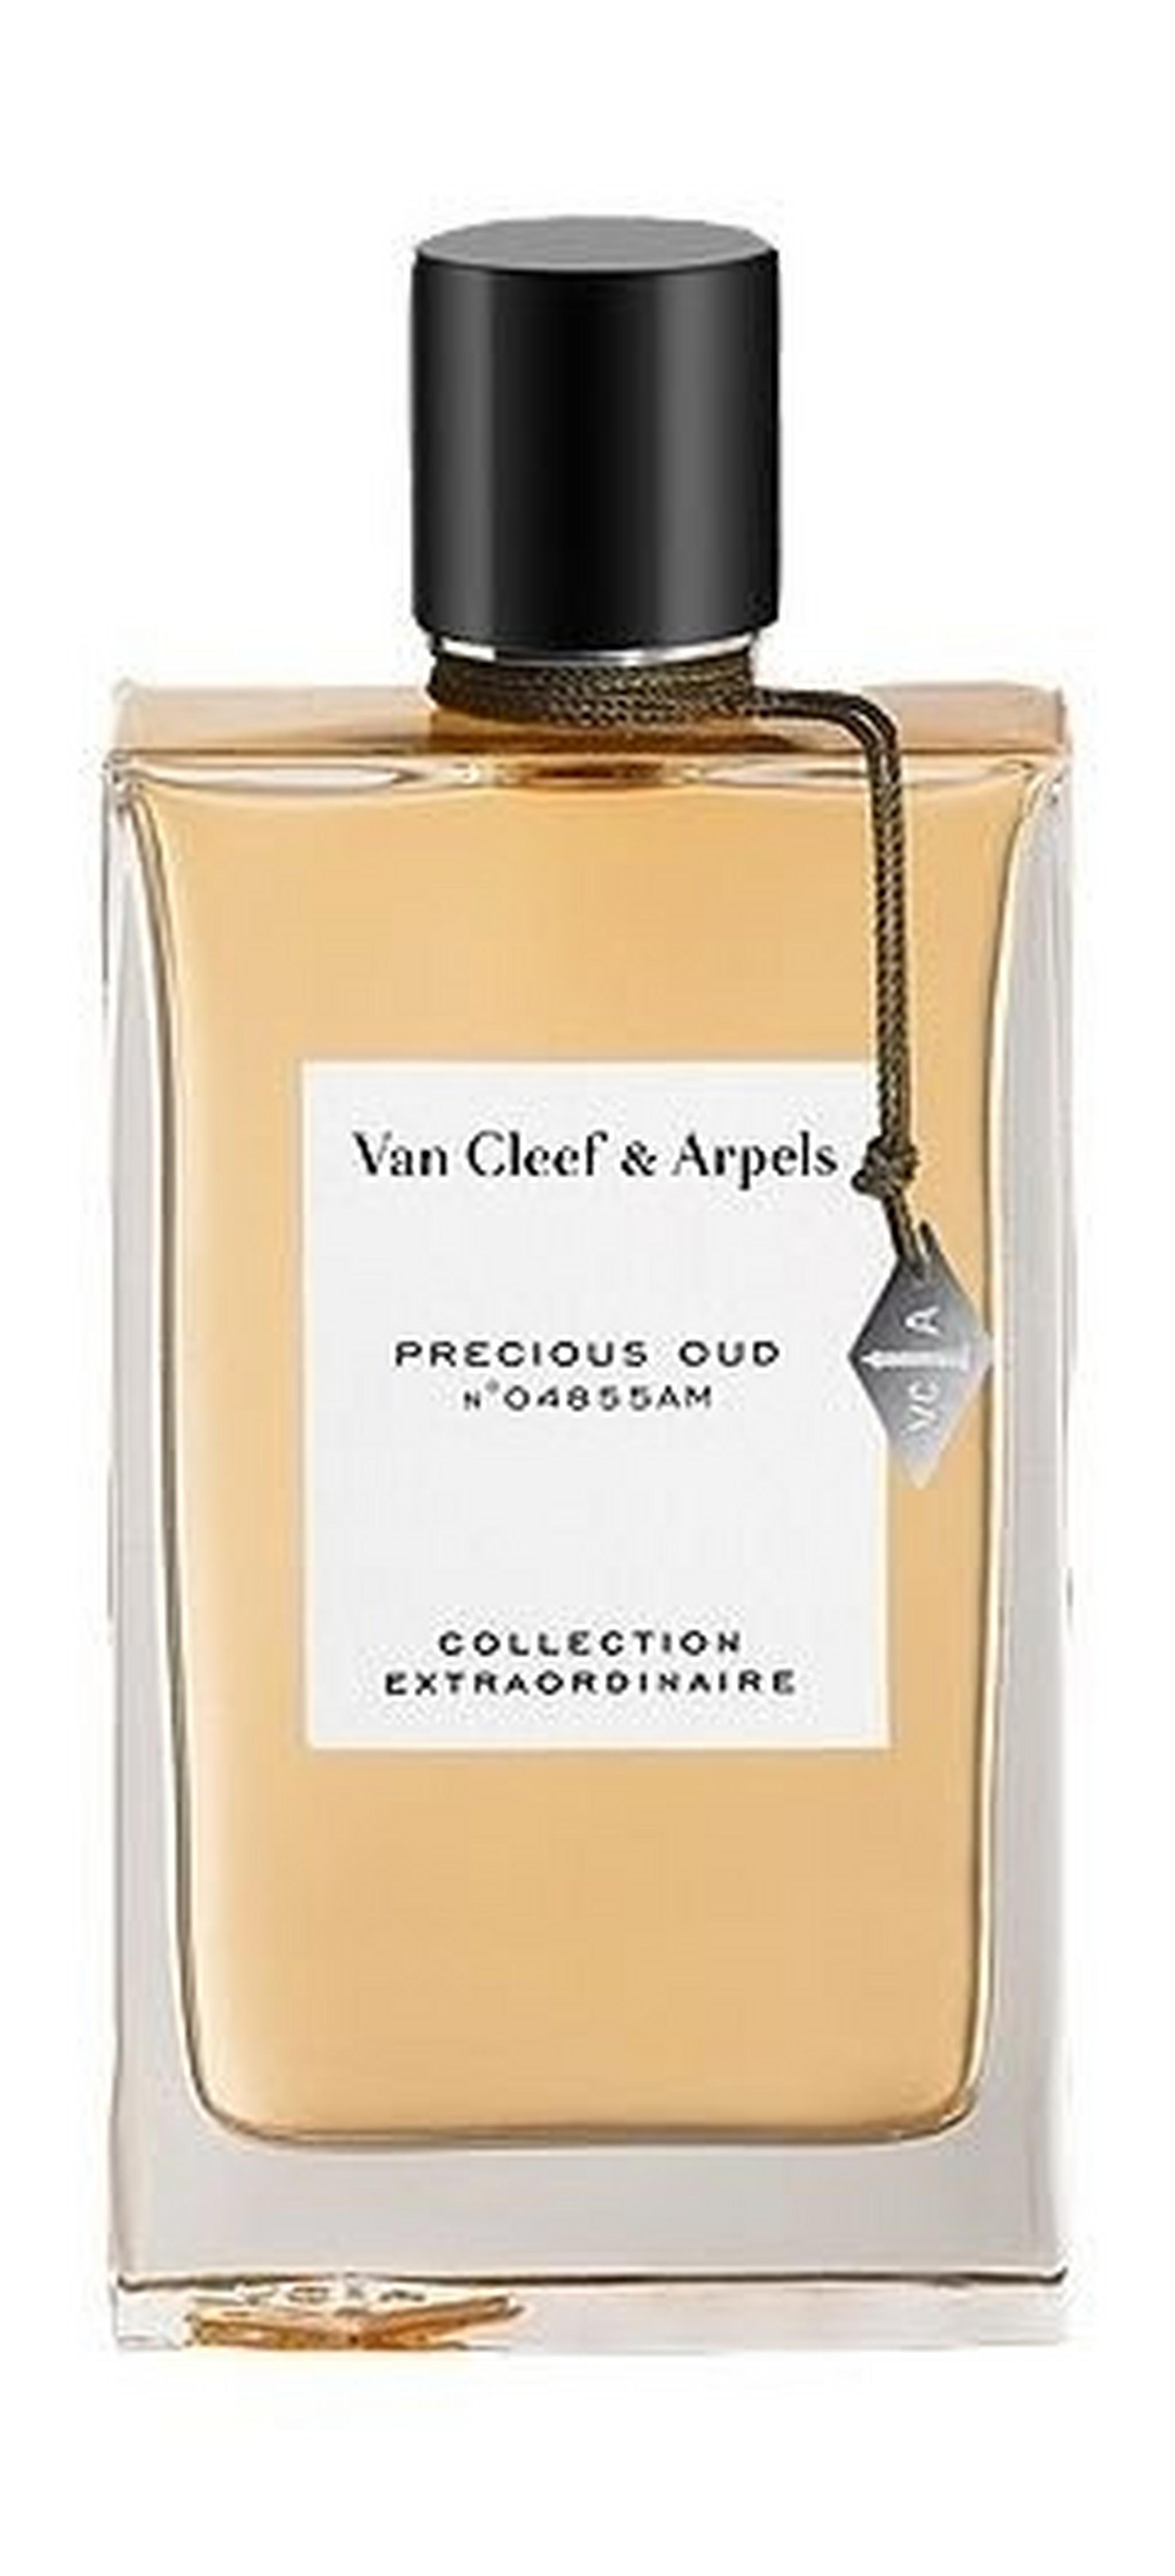 Van Cleef & Arpels Precious Oud Unisex 75 ml EDP